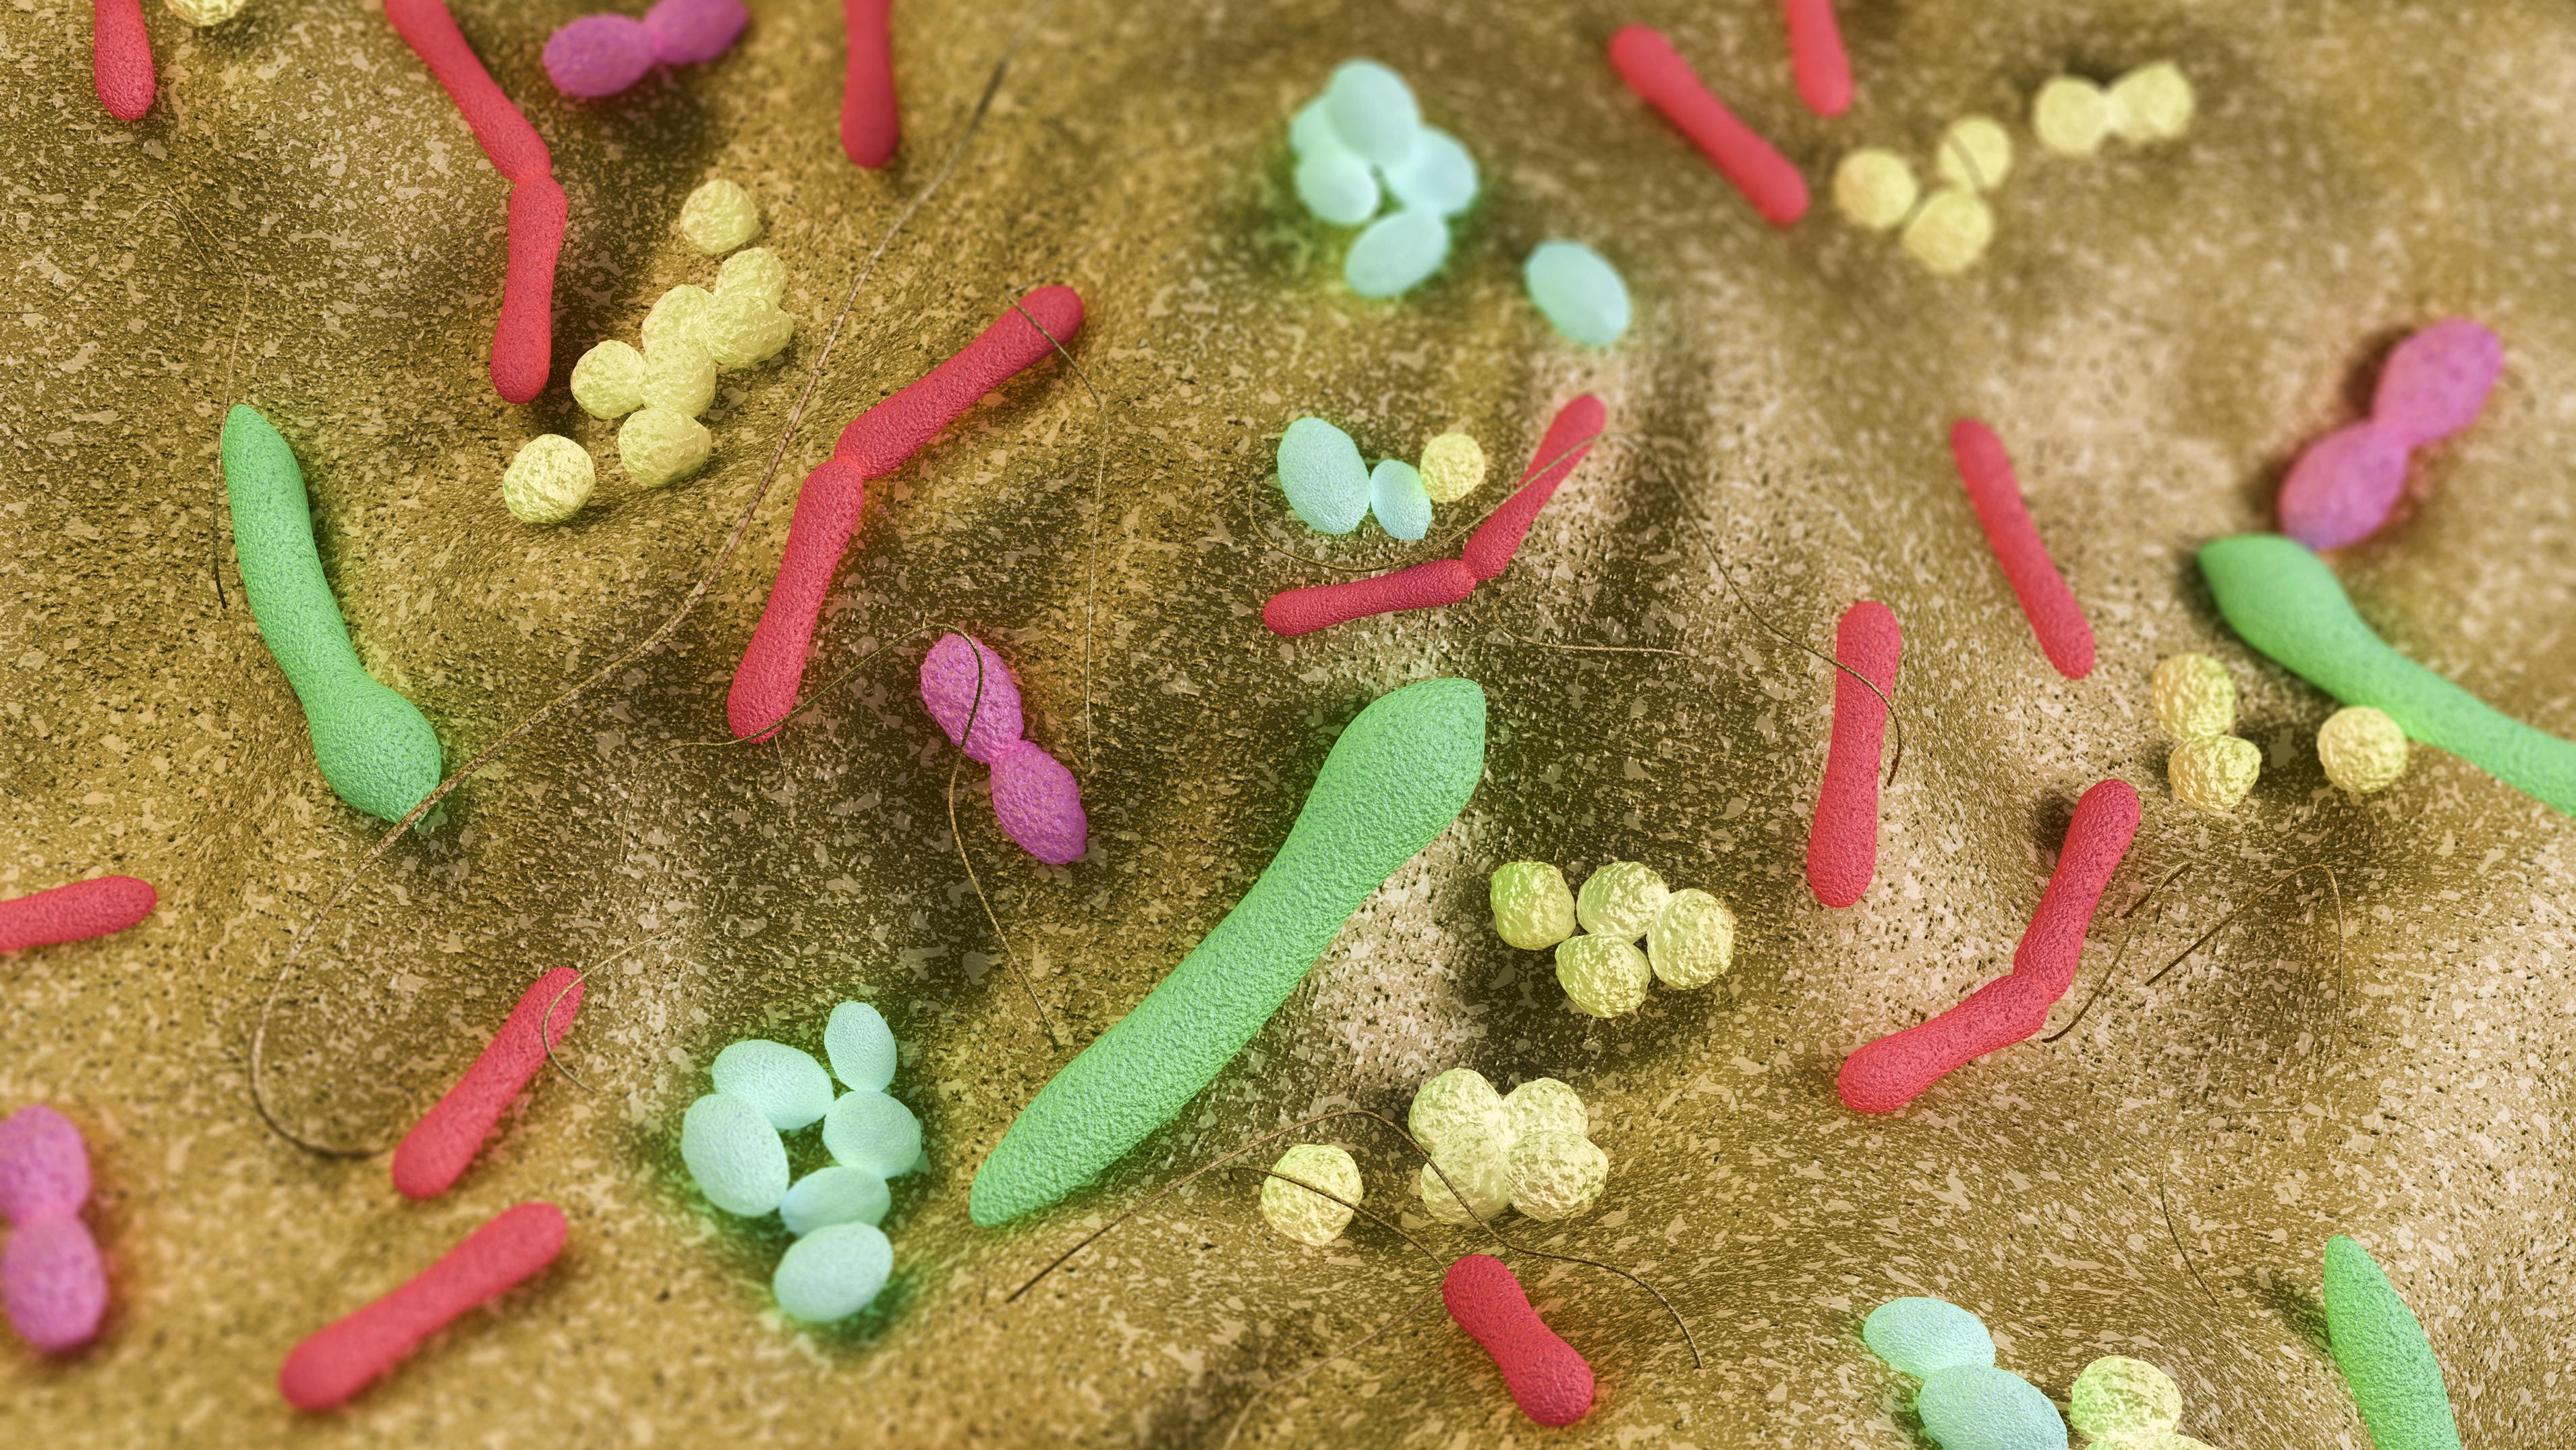 Bichonner le microbiote pour mieux combattre le cancer
Bichonner le microbiote pour mieux combattre le cancer